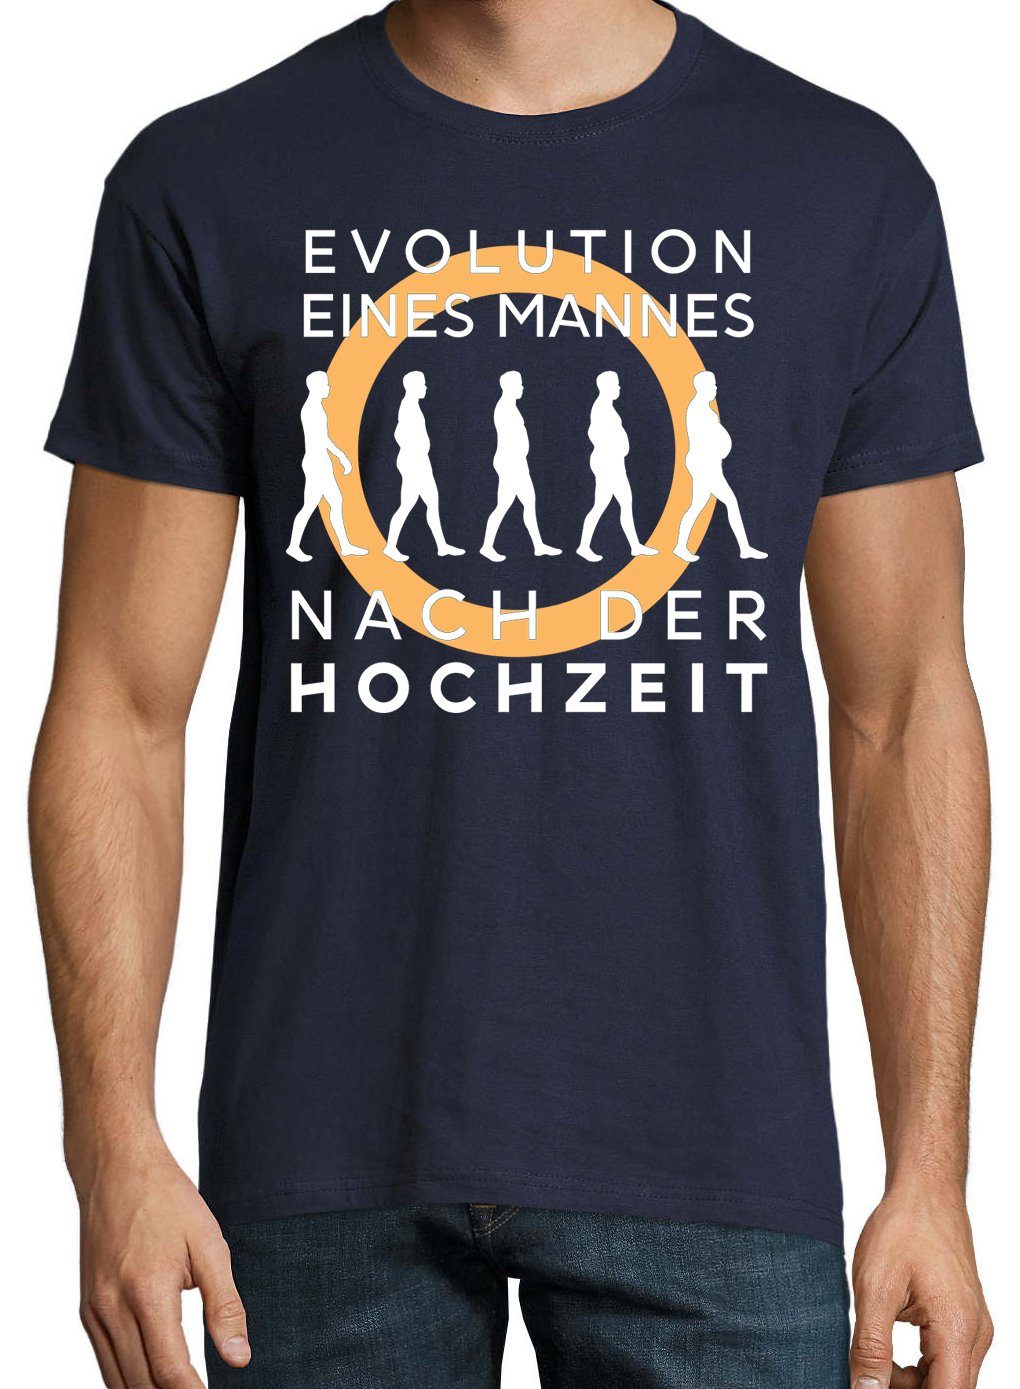 nach Herren mit der Hochzeit Designz Frontprint Navyblau T-Shirt Shirt Youth trendigem Evolution